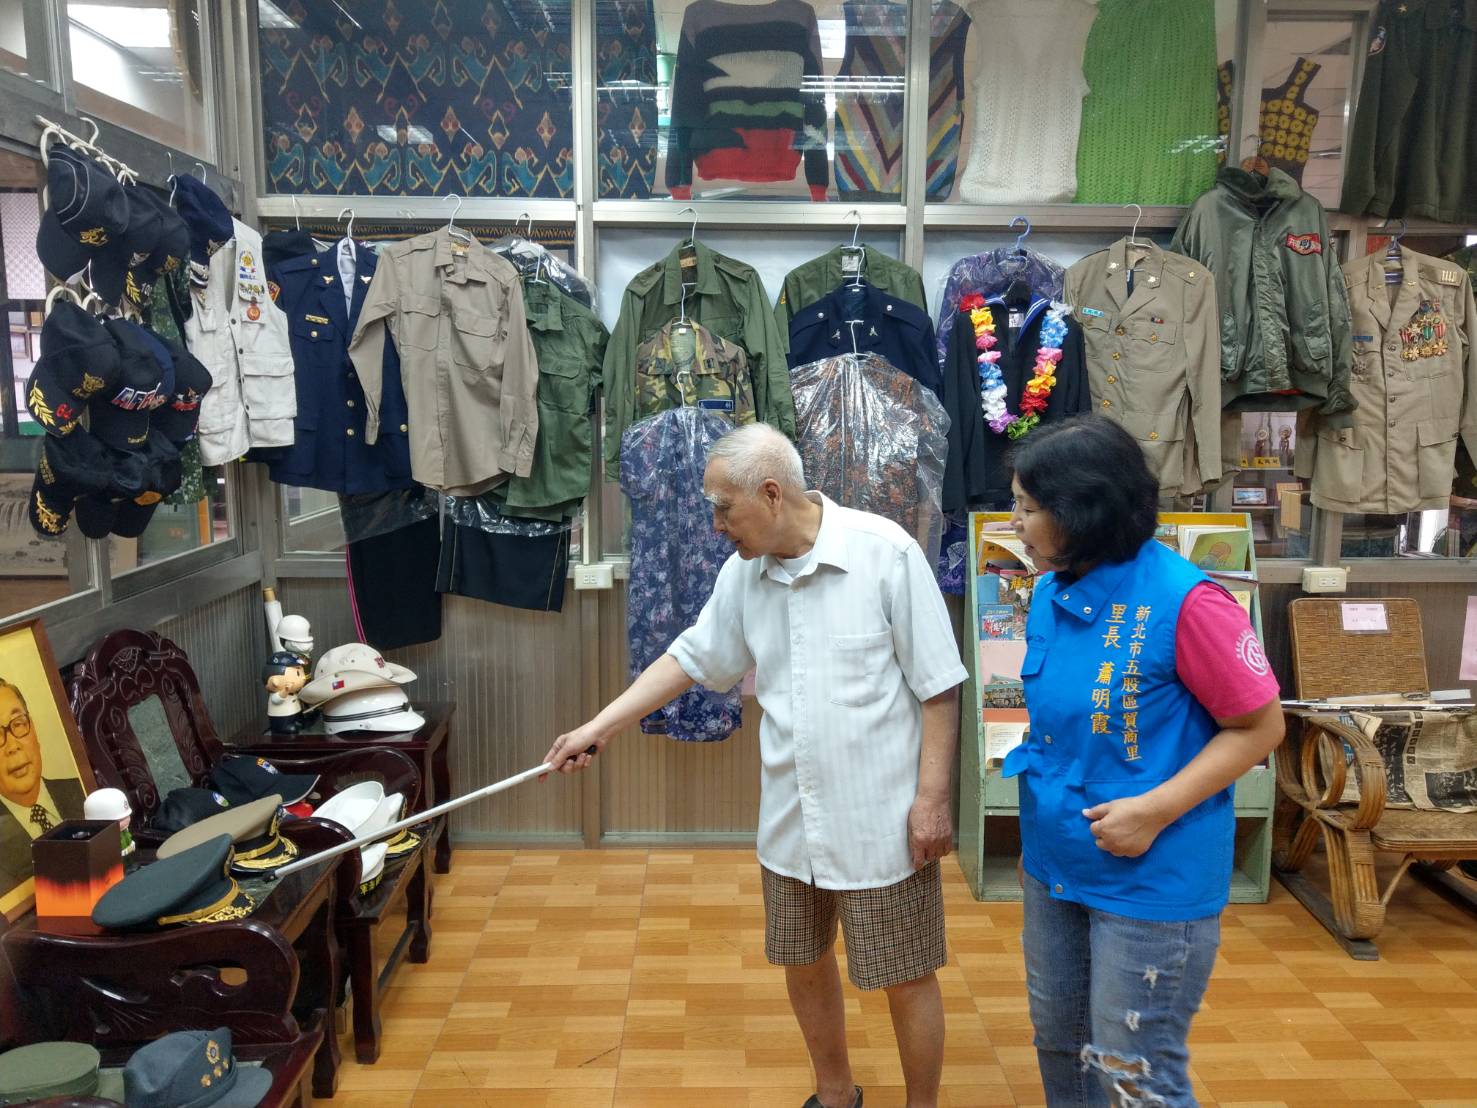 91歲的退休上校劉阿公說（左穿白襯衫者），他每天都來「眷村文史館」逛逛，回味當年的點點滴滴。有空也會來當志工跟里民說故事。